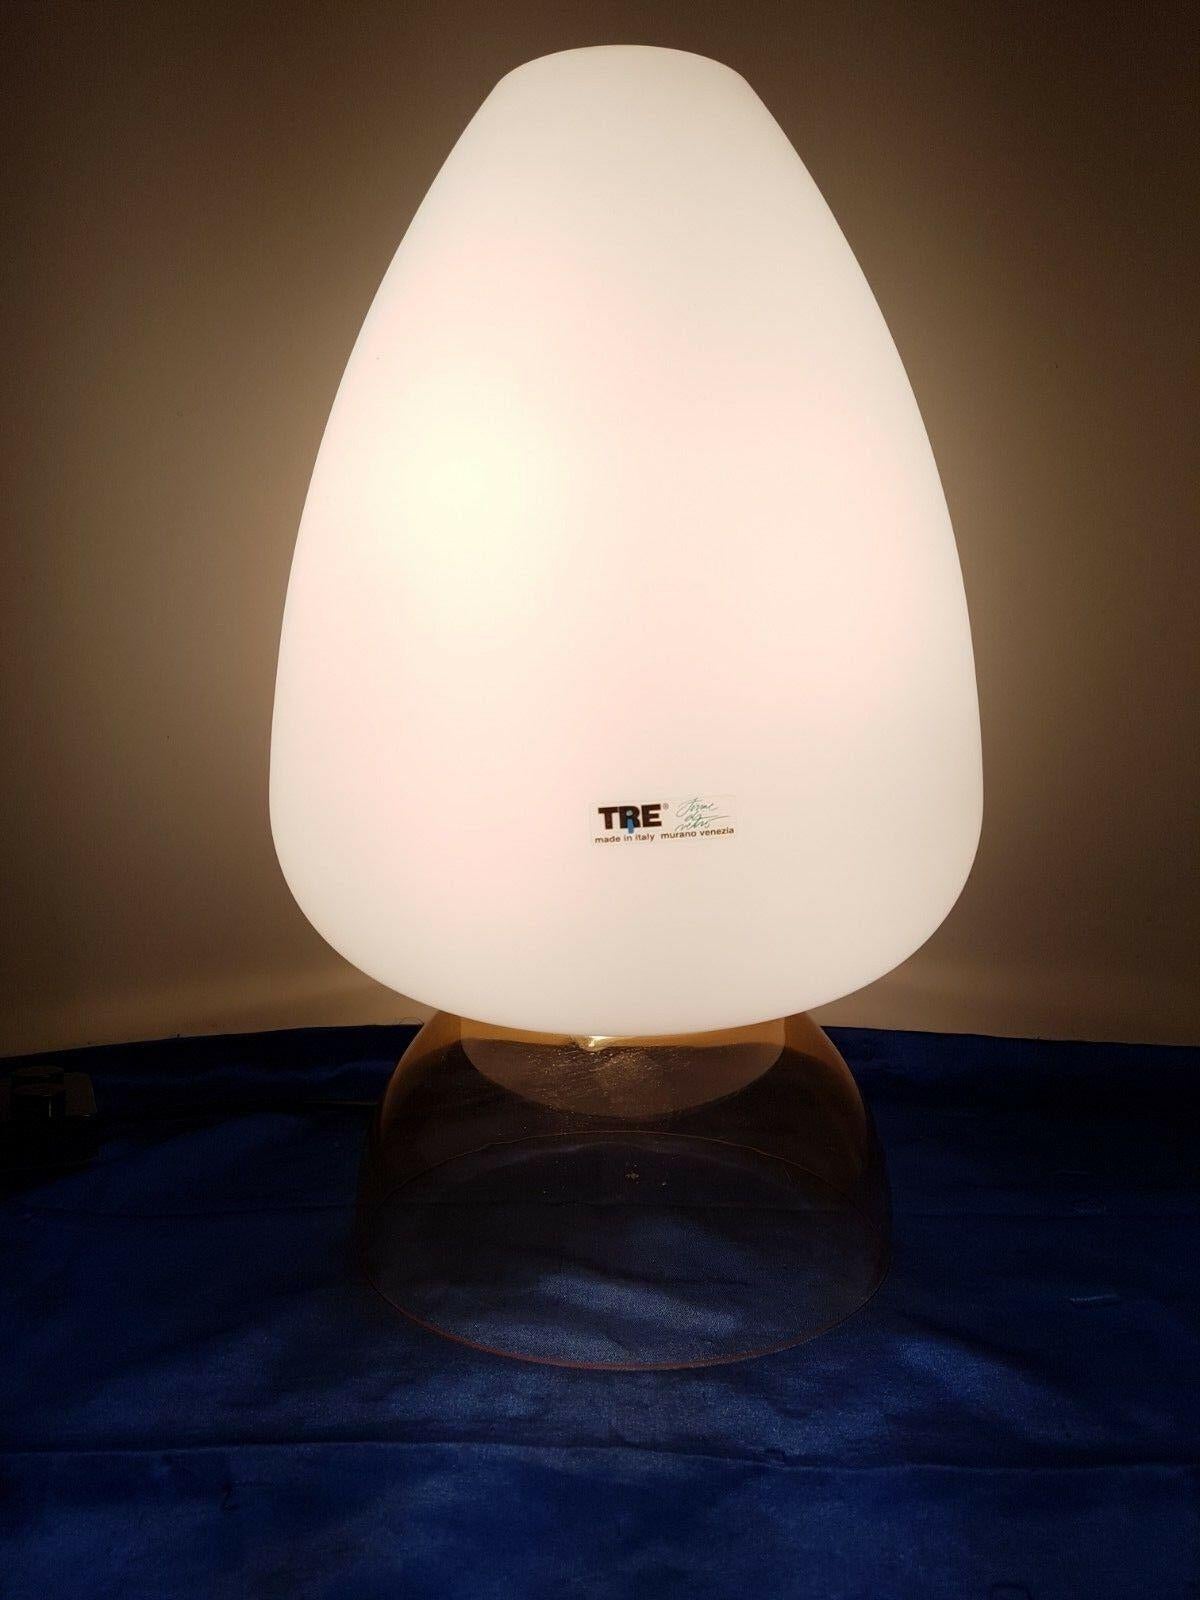 Schöne Murano-Tischlampe,
um 1980.
Perfekter Zustand, mit dem Originaletikett
Doppelte Beleuchtung.
Maße: 48 cm hoch / 28 cm breit.
890 Euro.